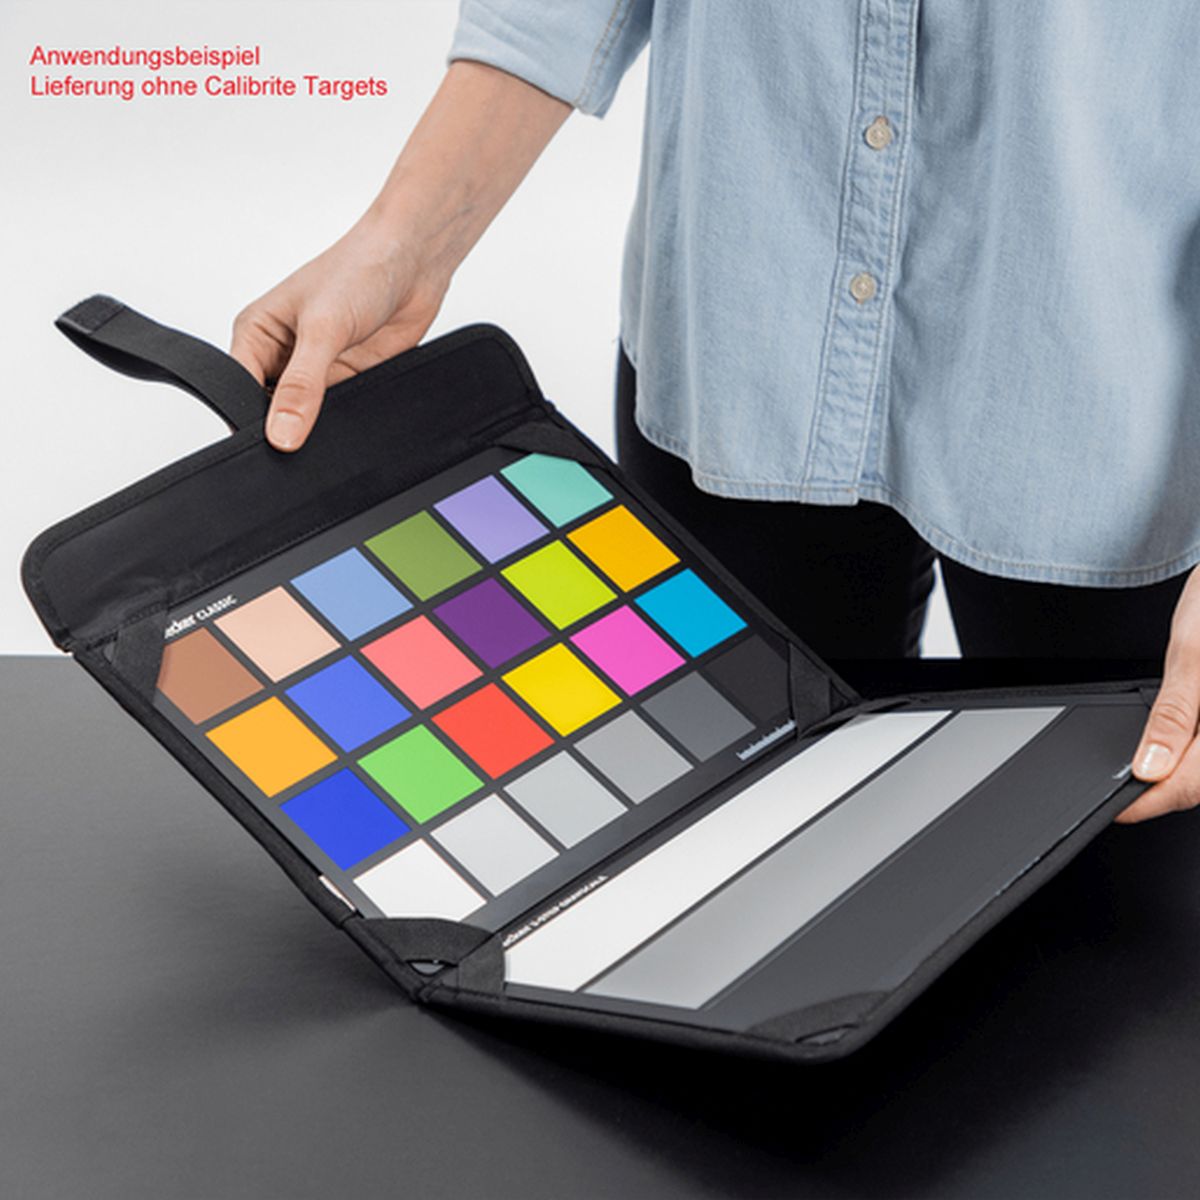 Calibrite ColorChecker Folio-Tasche Schutztasche für 2 ColorChecker-Targets